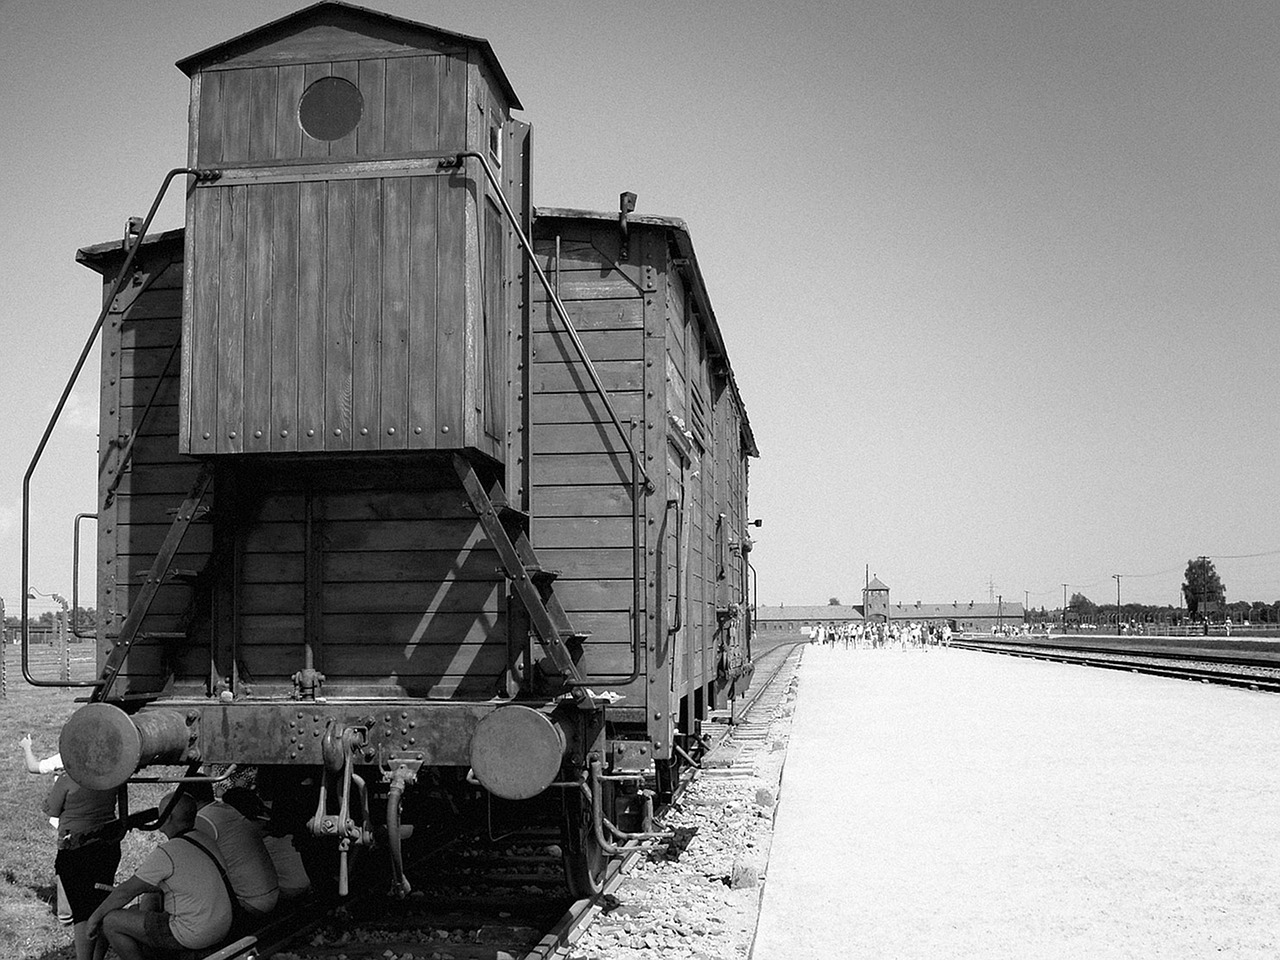 auschvitz - birkenau train concentration camp free photo